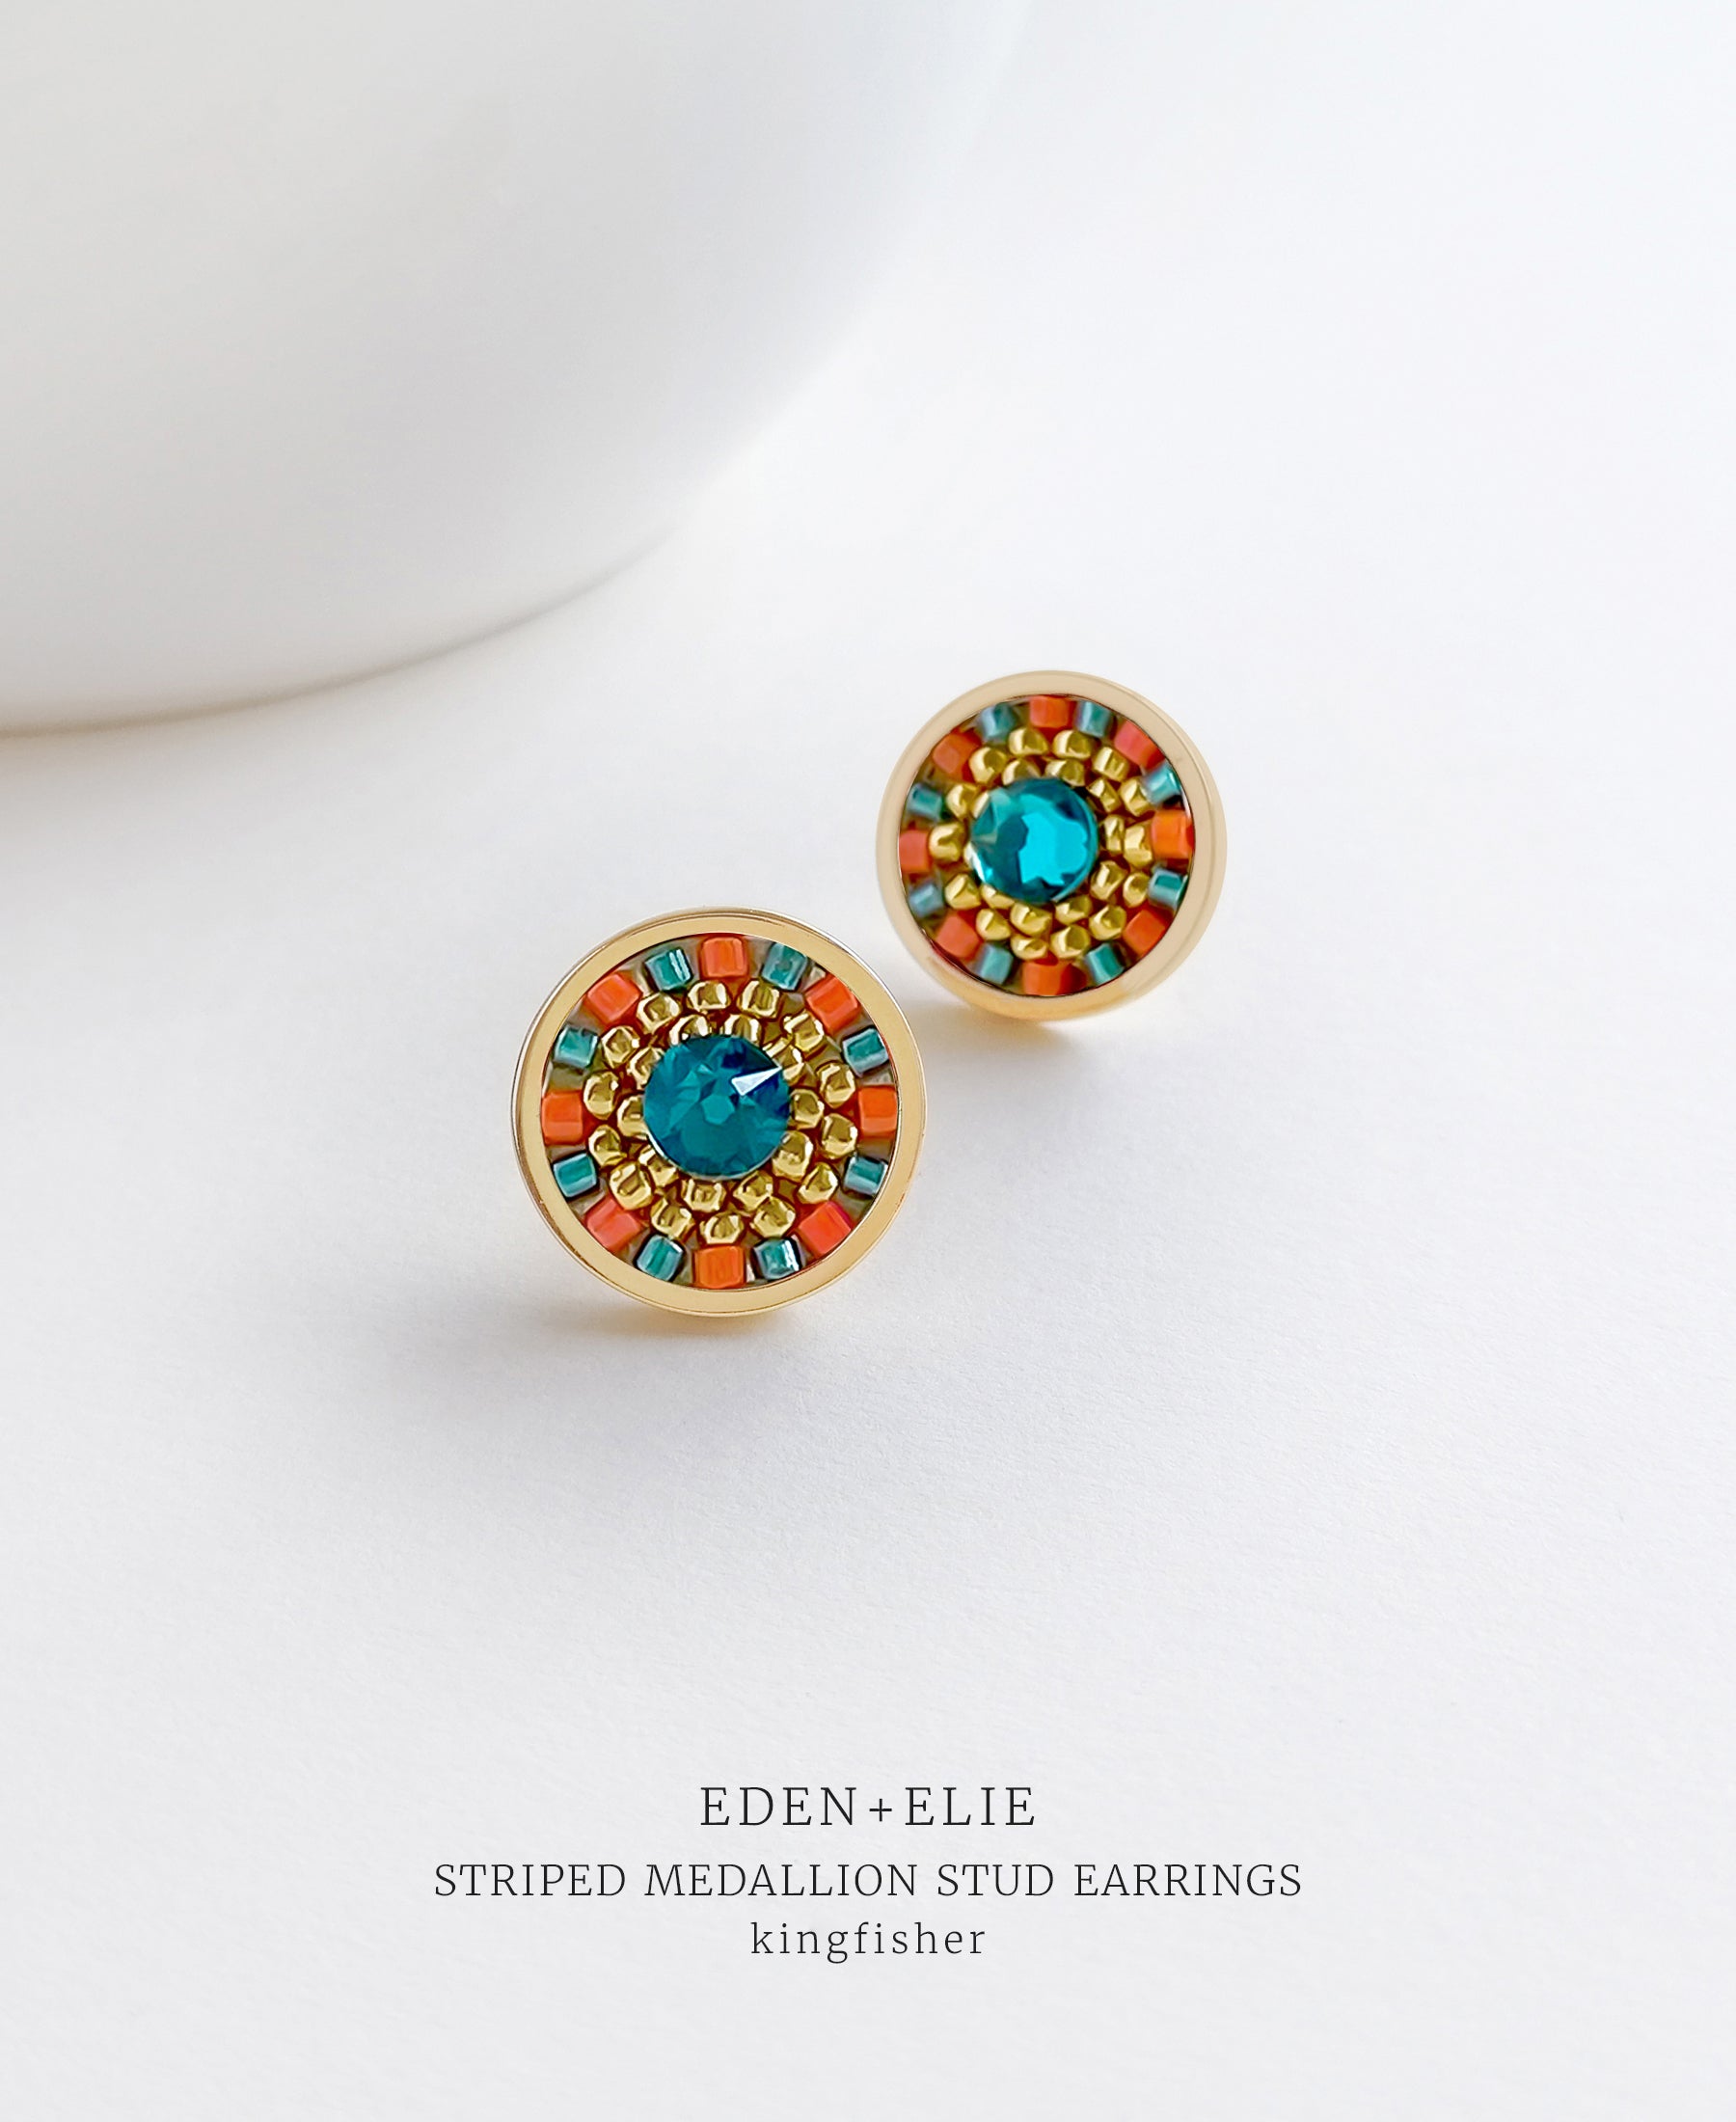 EDEN + ELIE Striped Medallion stud earrings - Kingfisher